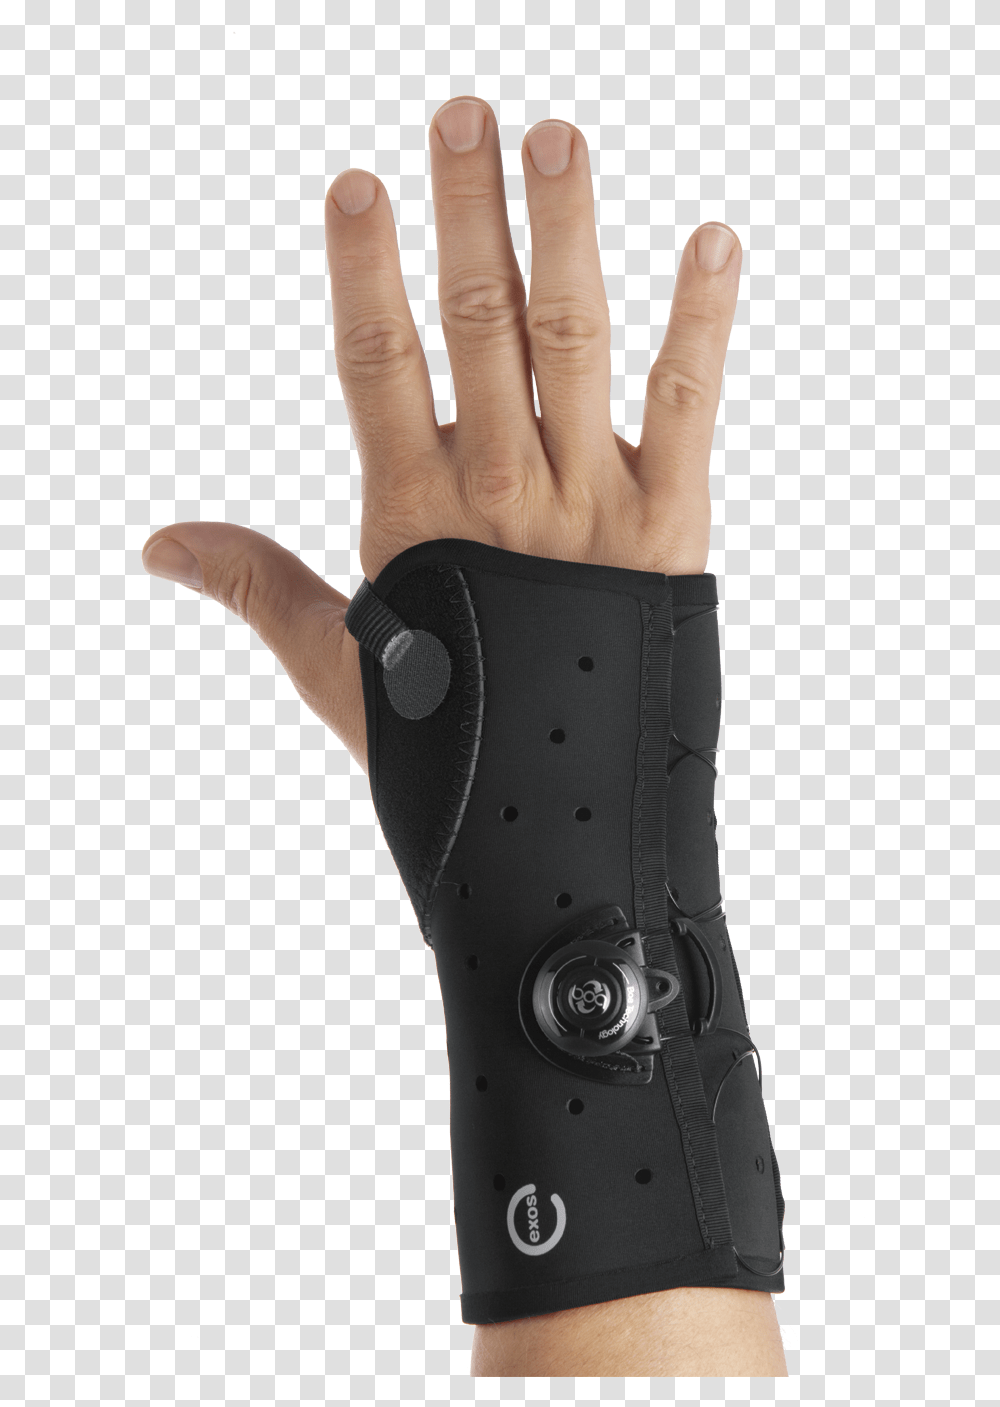 Wrist Brace With Boa Wrist Brace With Boa, Person, Human, Hand, Finger Transparent Png